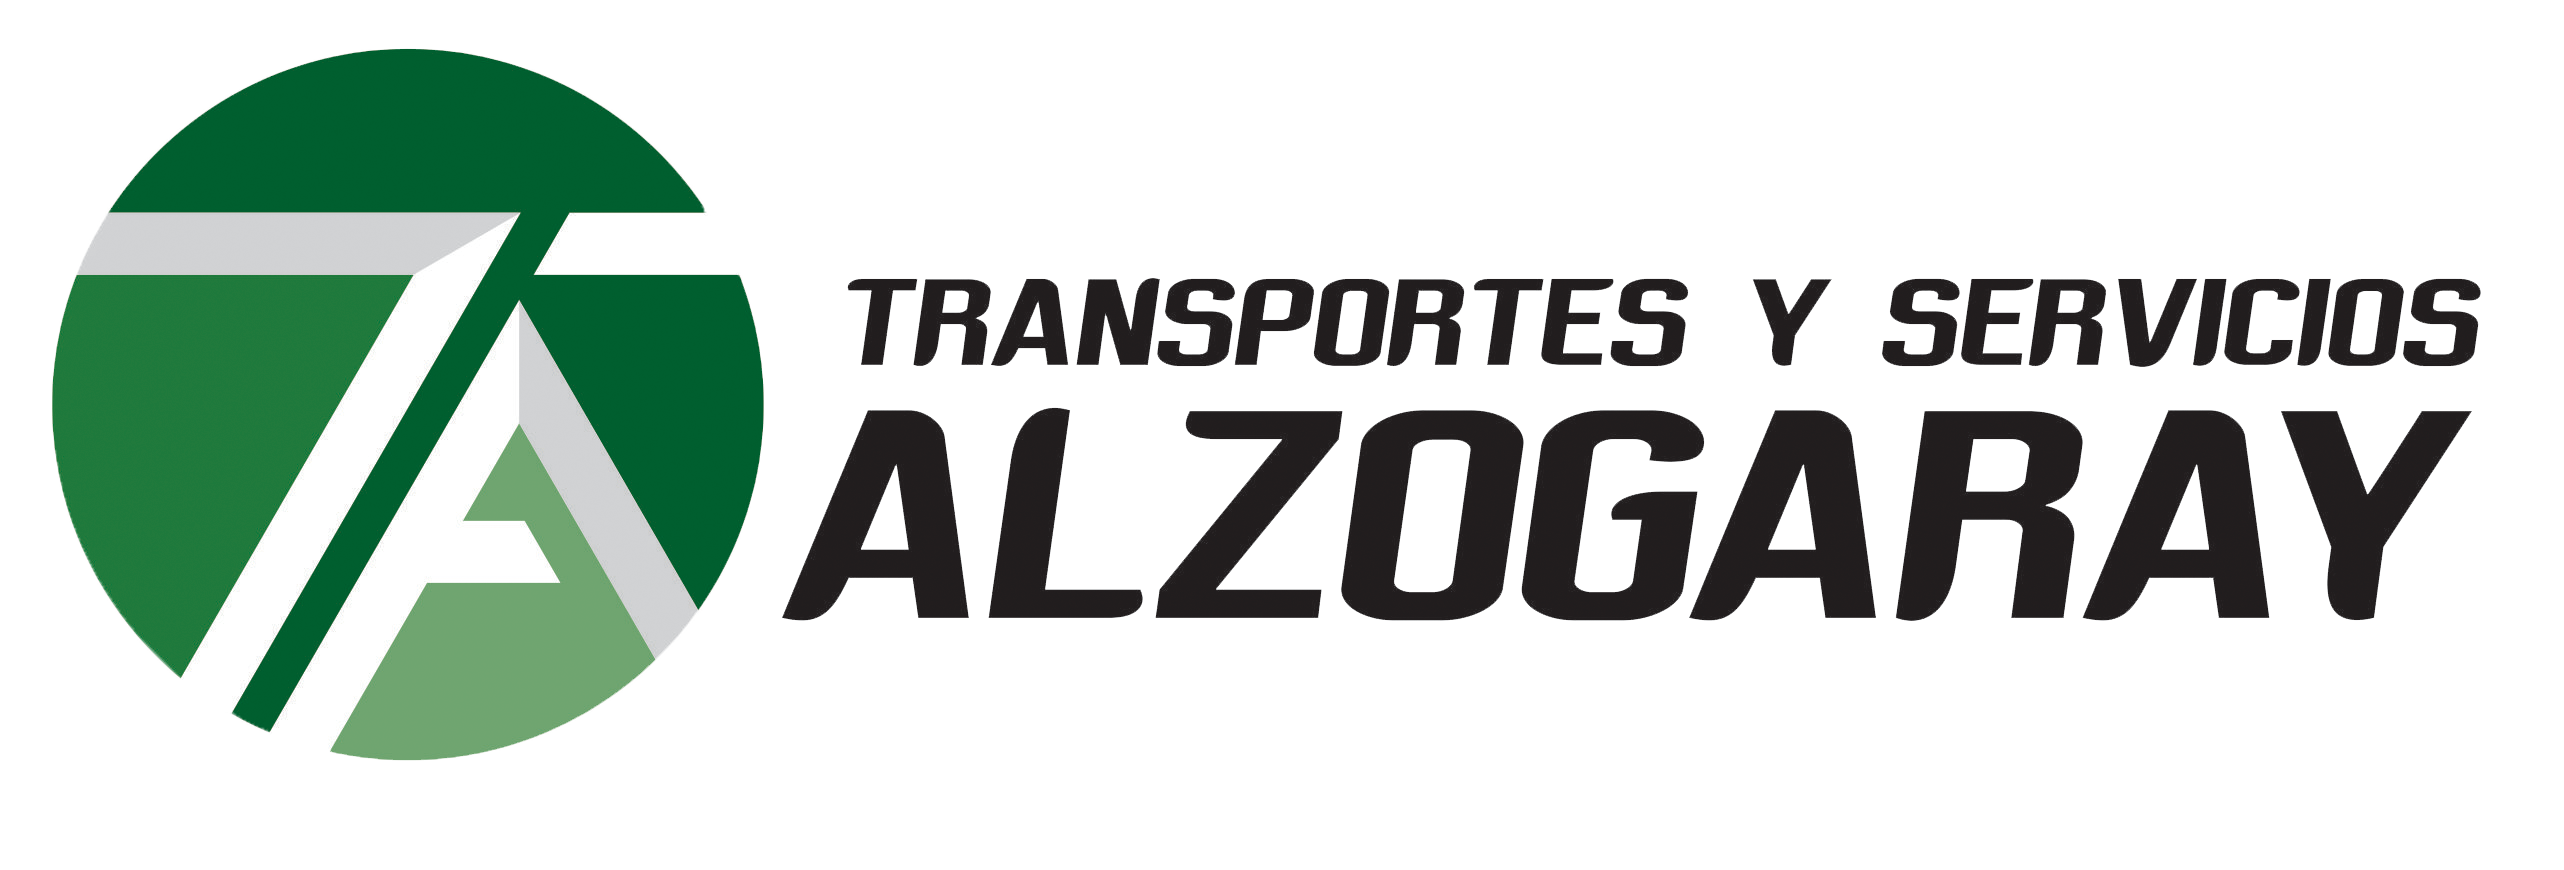 ALZOGARAY | Transporte de carga nacional e internacional